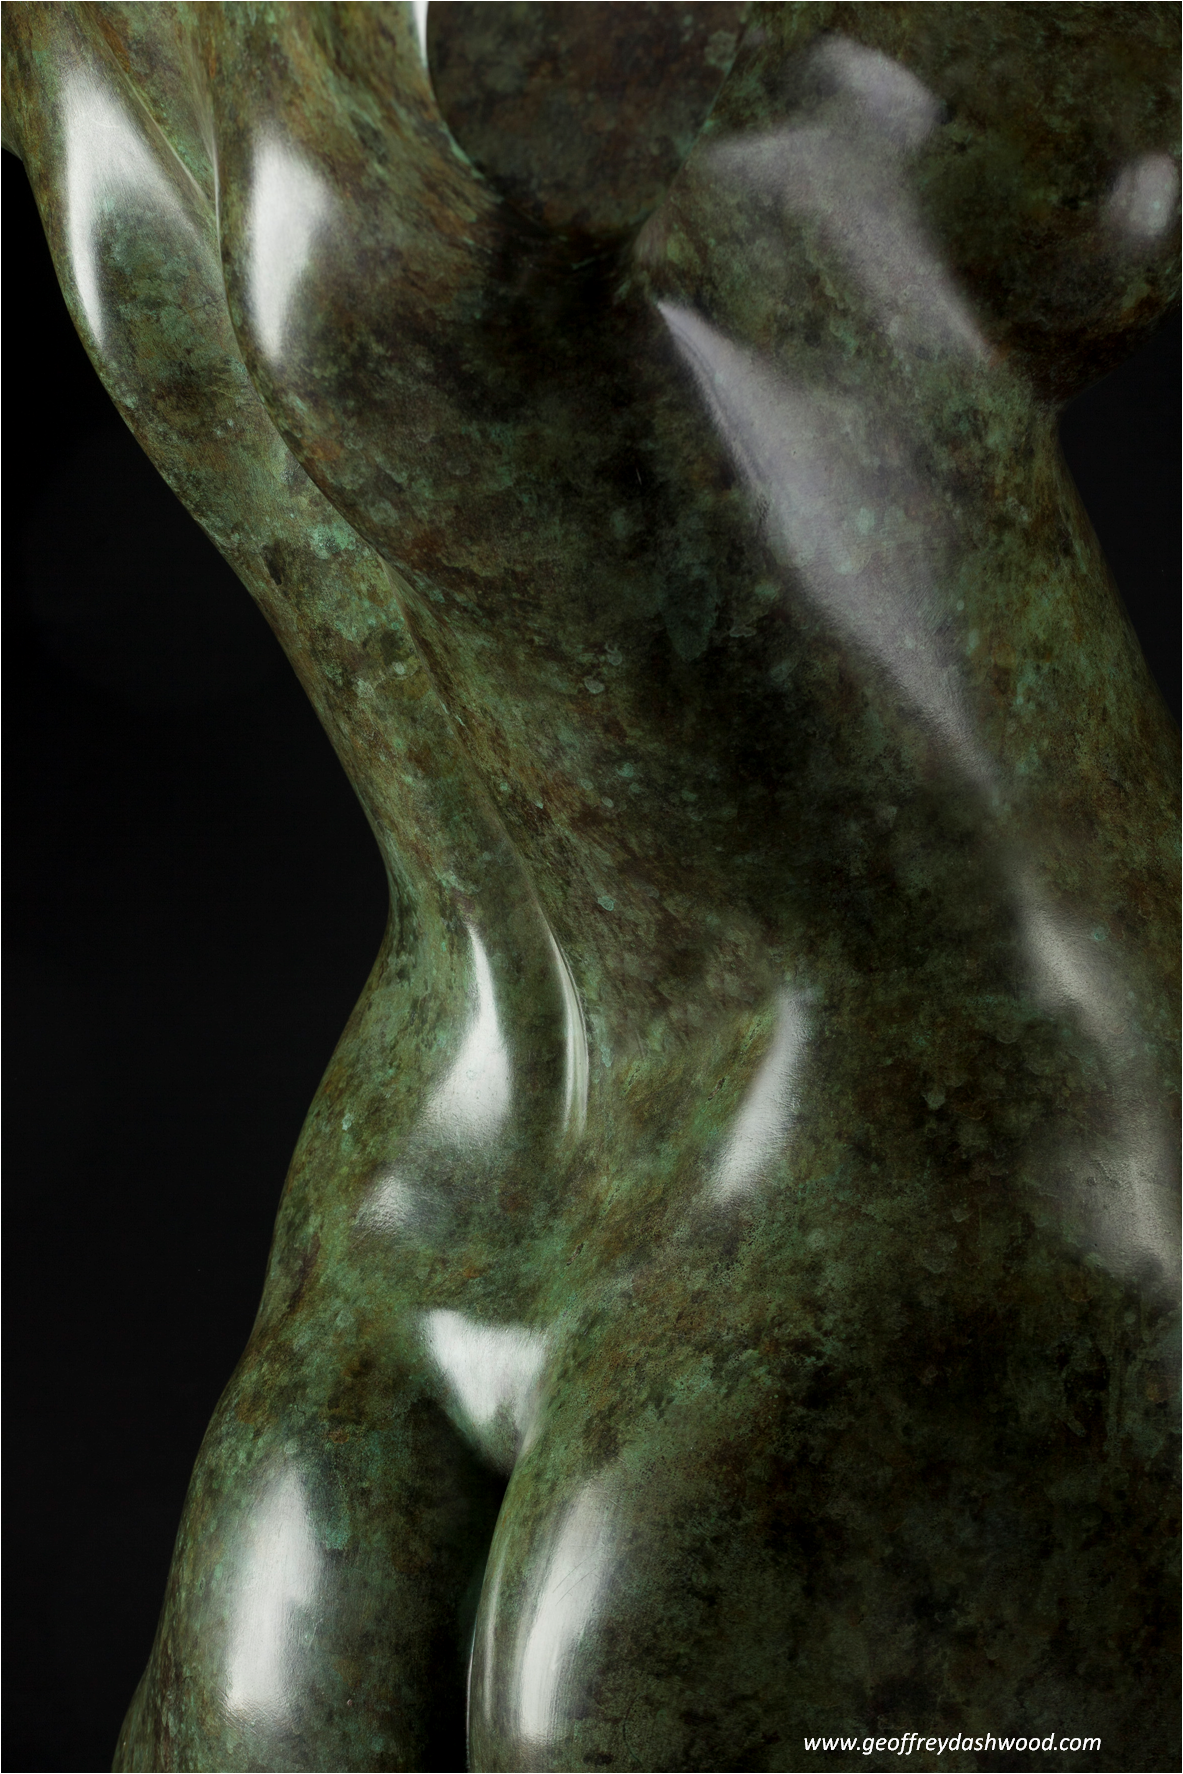 life size sculpture contemporary sculpture bird sculpture Geoffrey Dashwood bronze sculpture